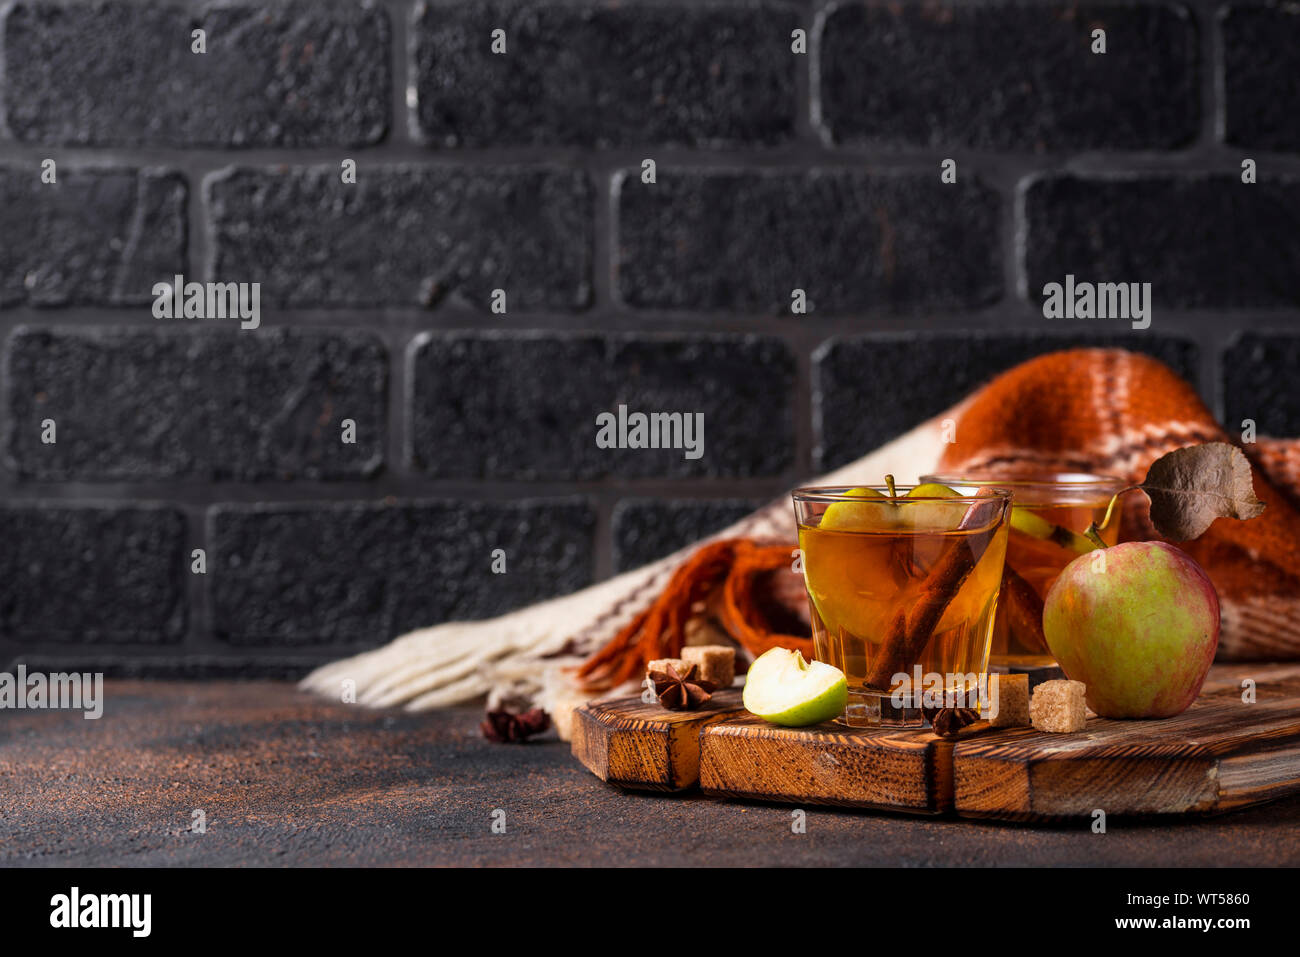 Speziato sidro di mela, drink di autunno Foto Stock